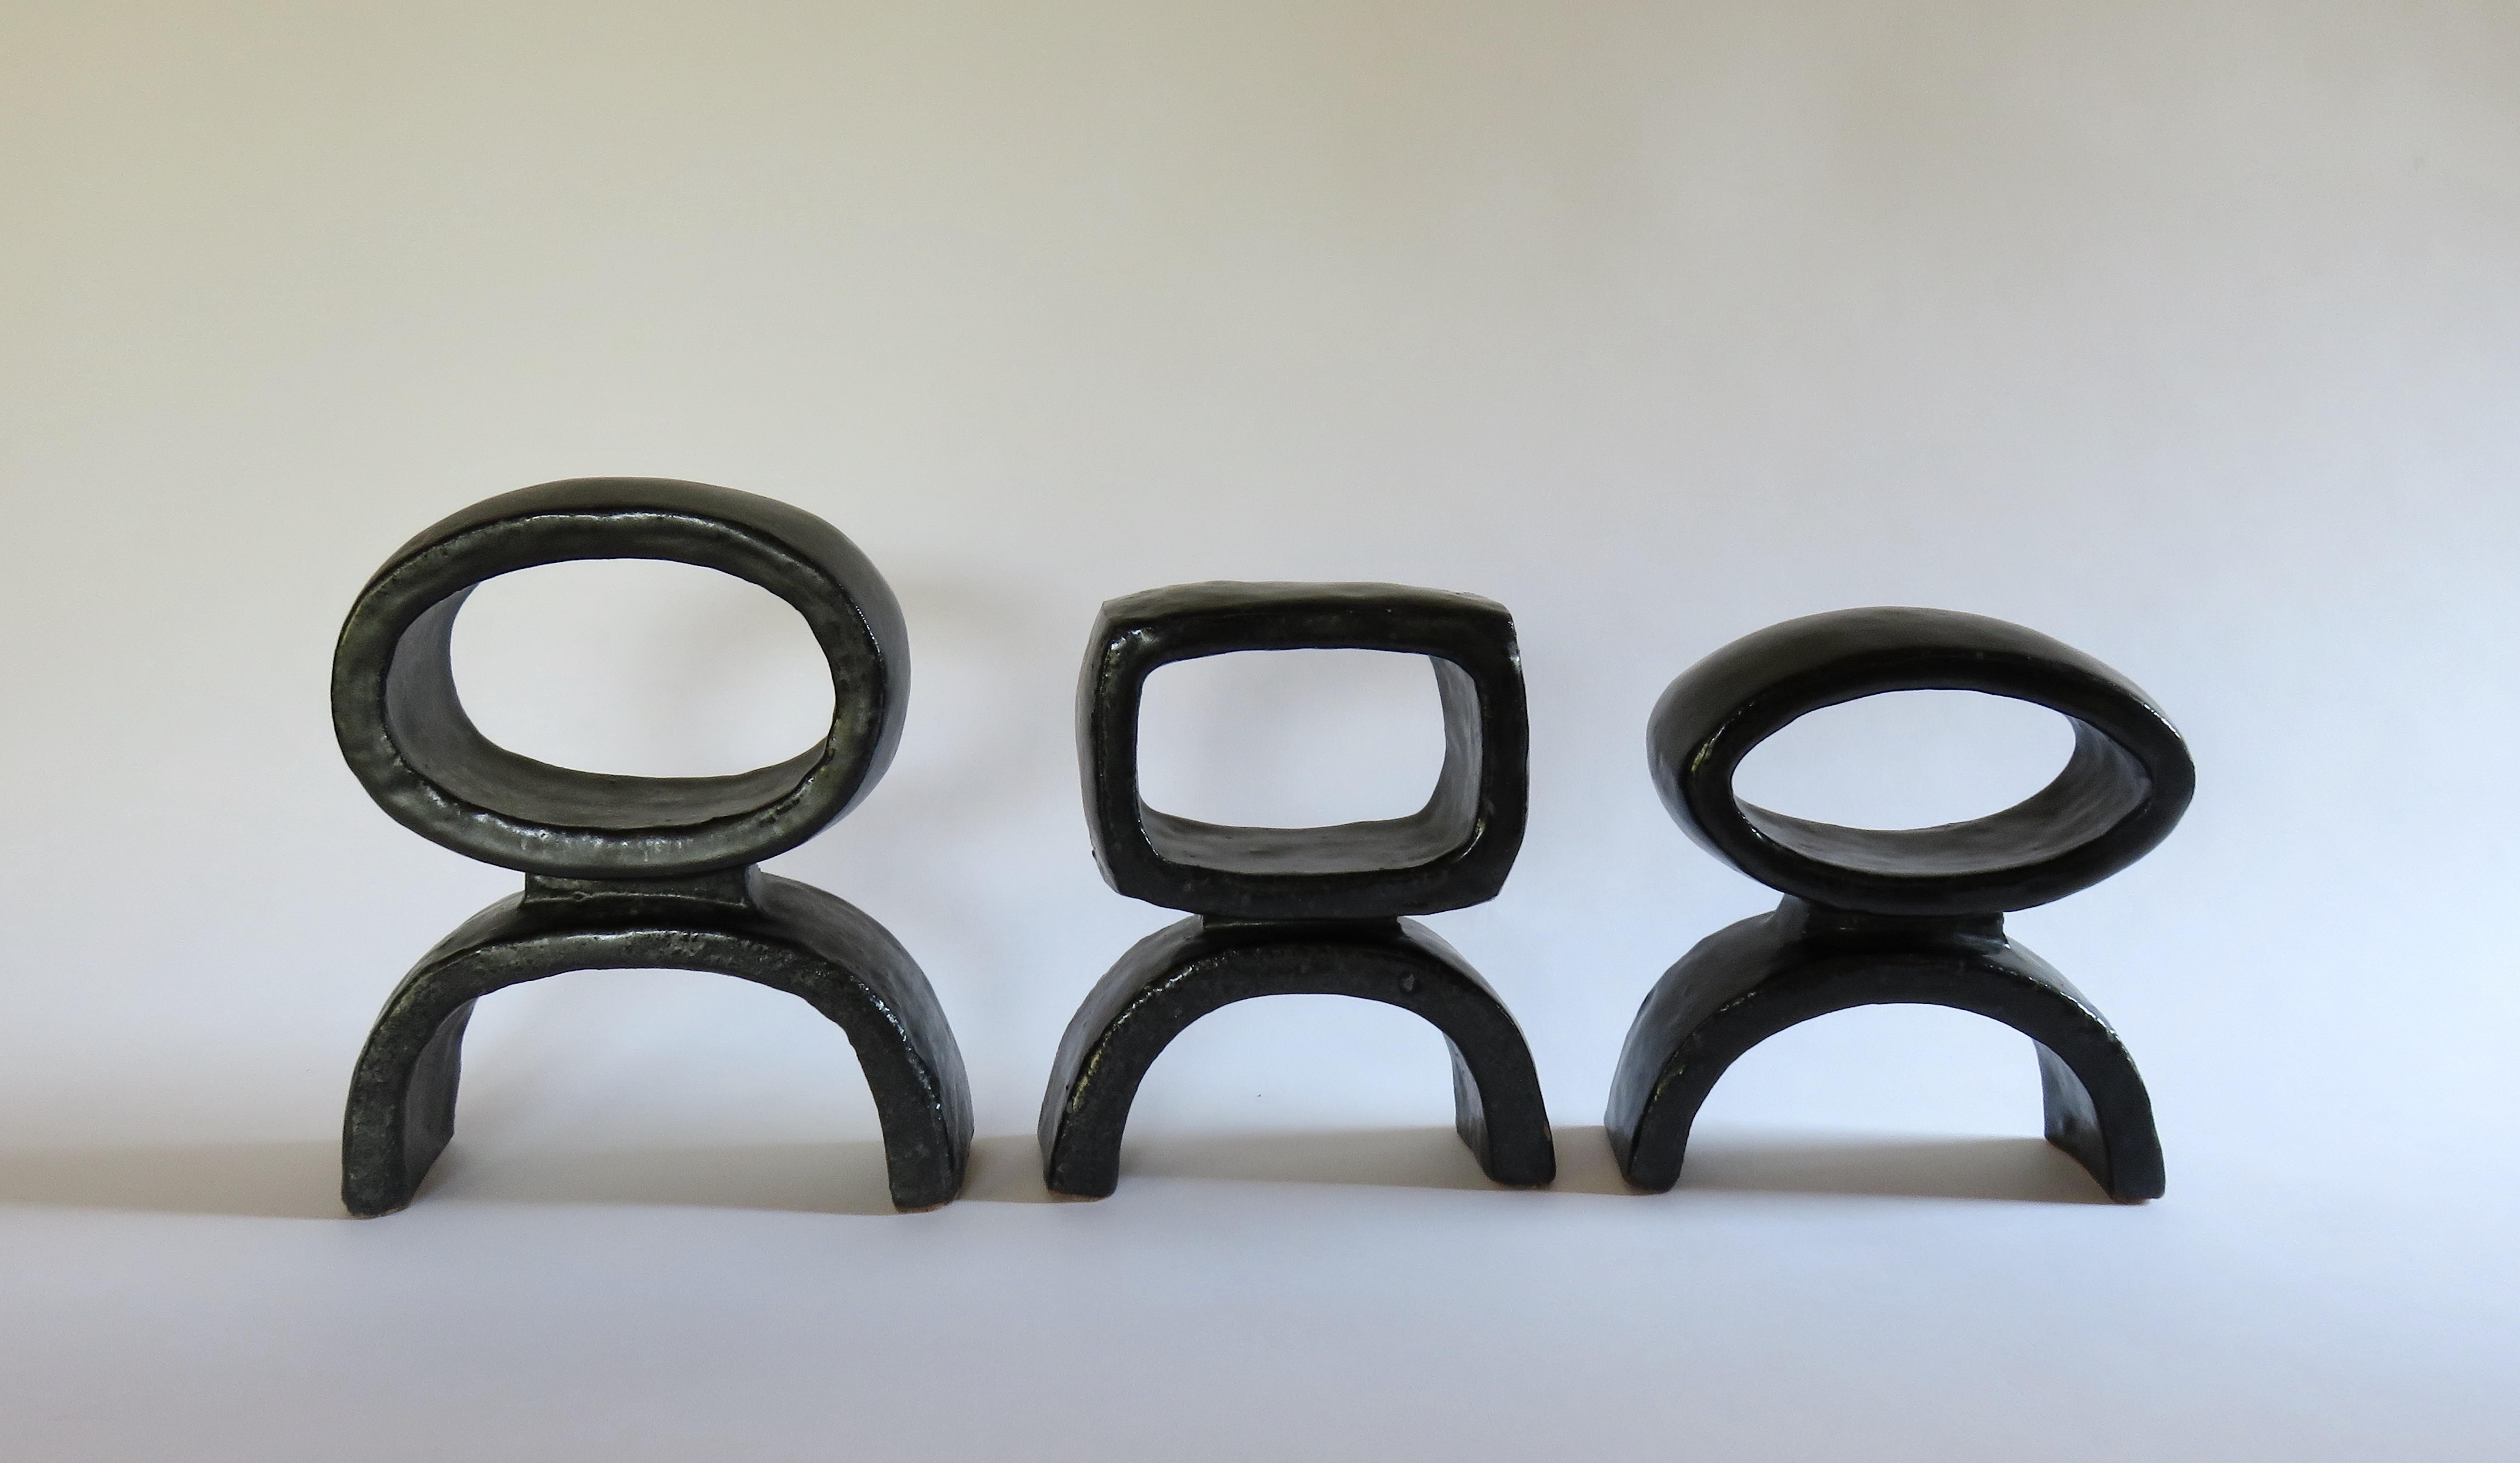 Un trio de 3 céramiques construites à la main  TOTEMs modernes issus d'une série de recherches sur la forme totémique. Chacun est différent, un rectangle souple, un ovale et un anneau circulaire sur des pieds arqués. La glaçure noire satinée du grès